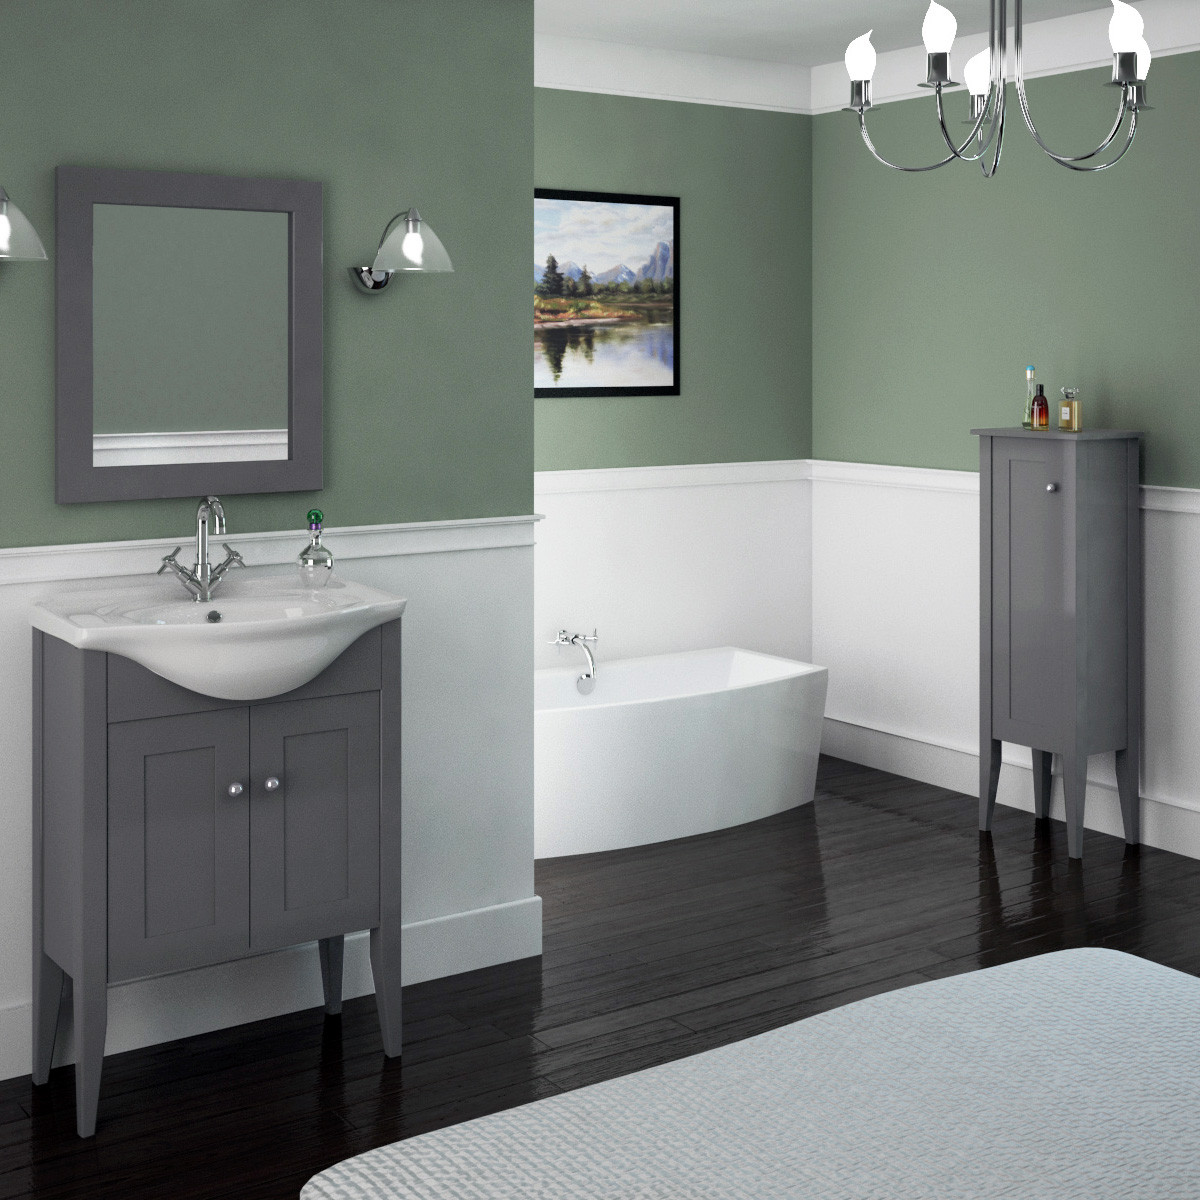 65 Bathroom Vanity
 Insolito Carolla 65 Bathroom Vanity Unit And Basin Buy